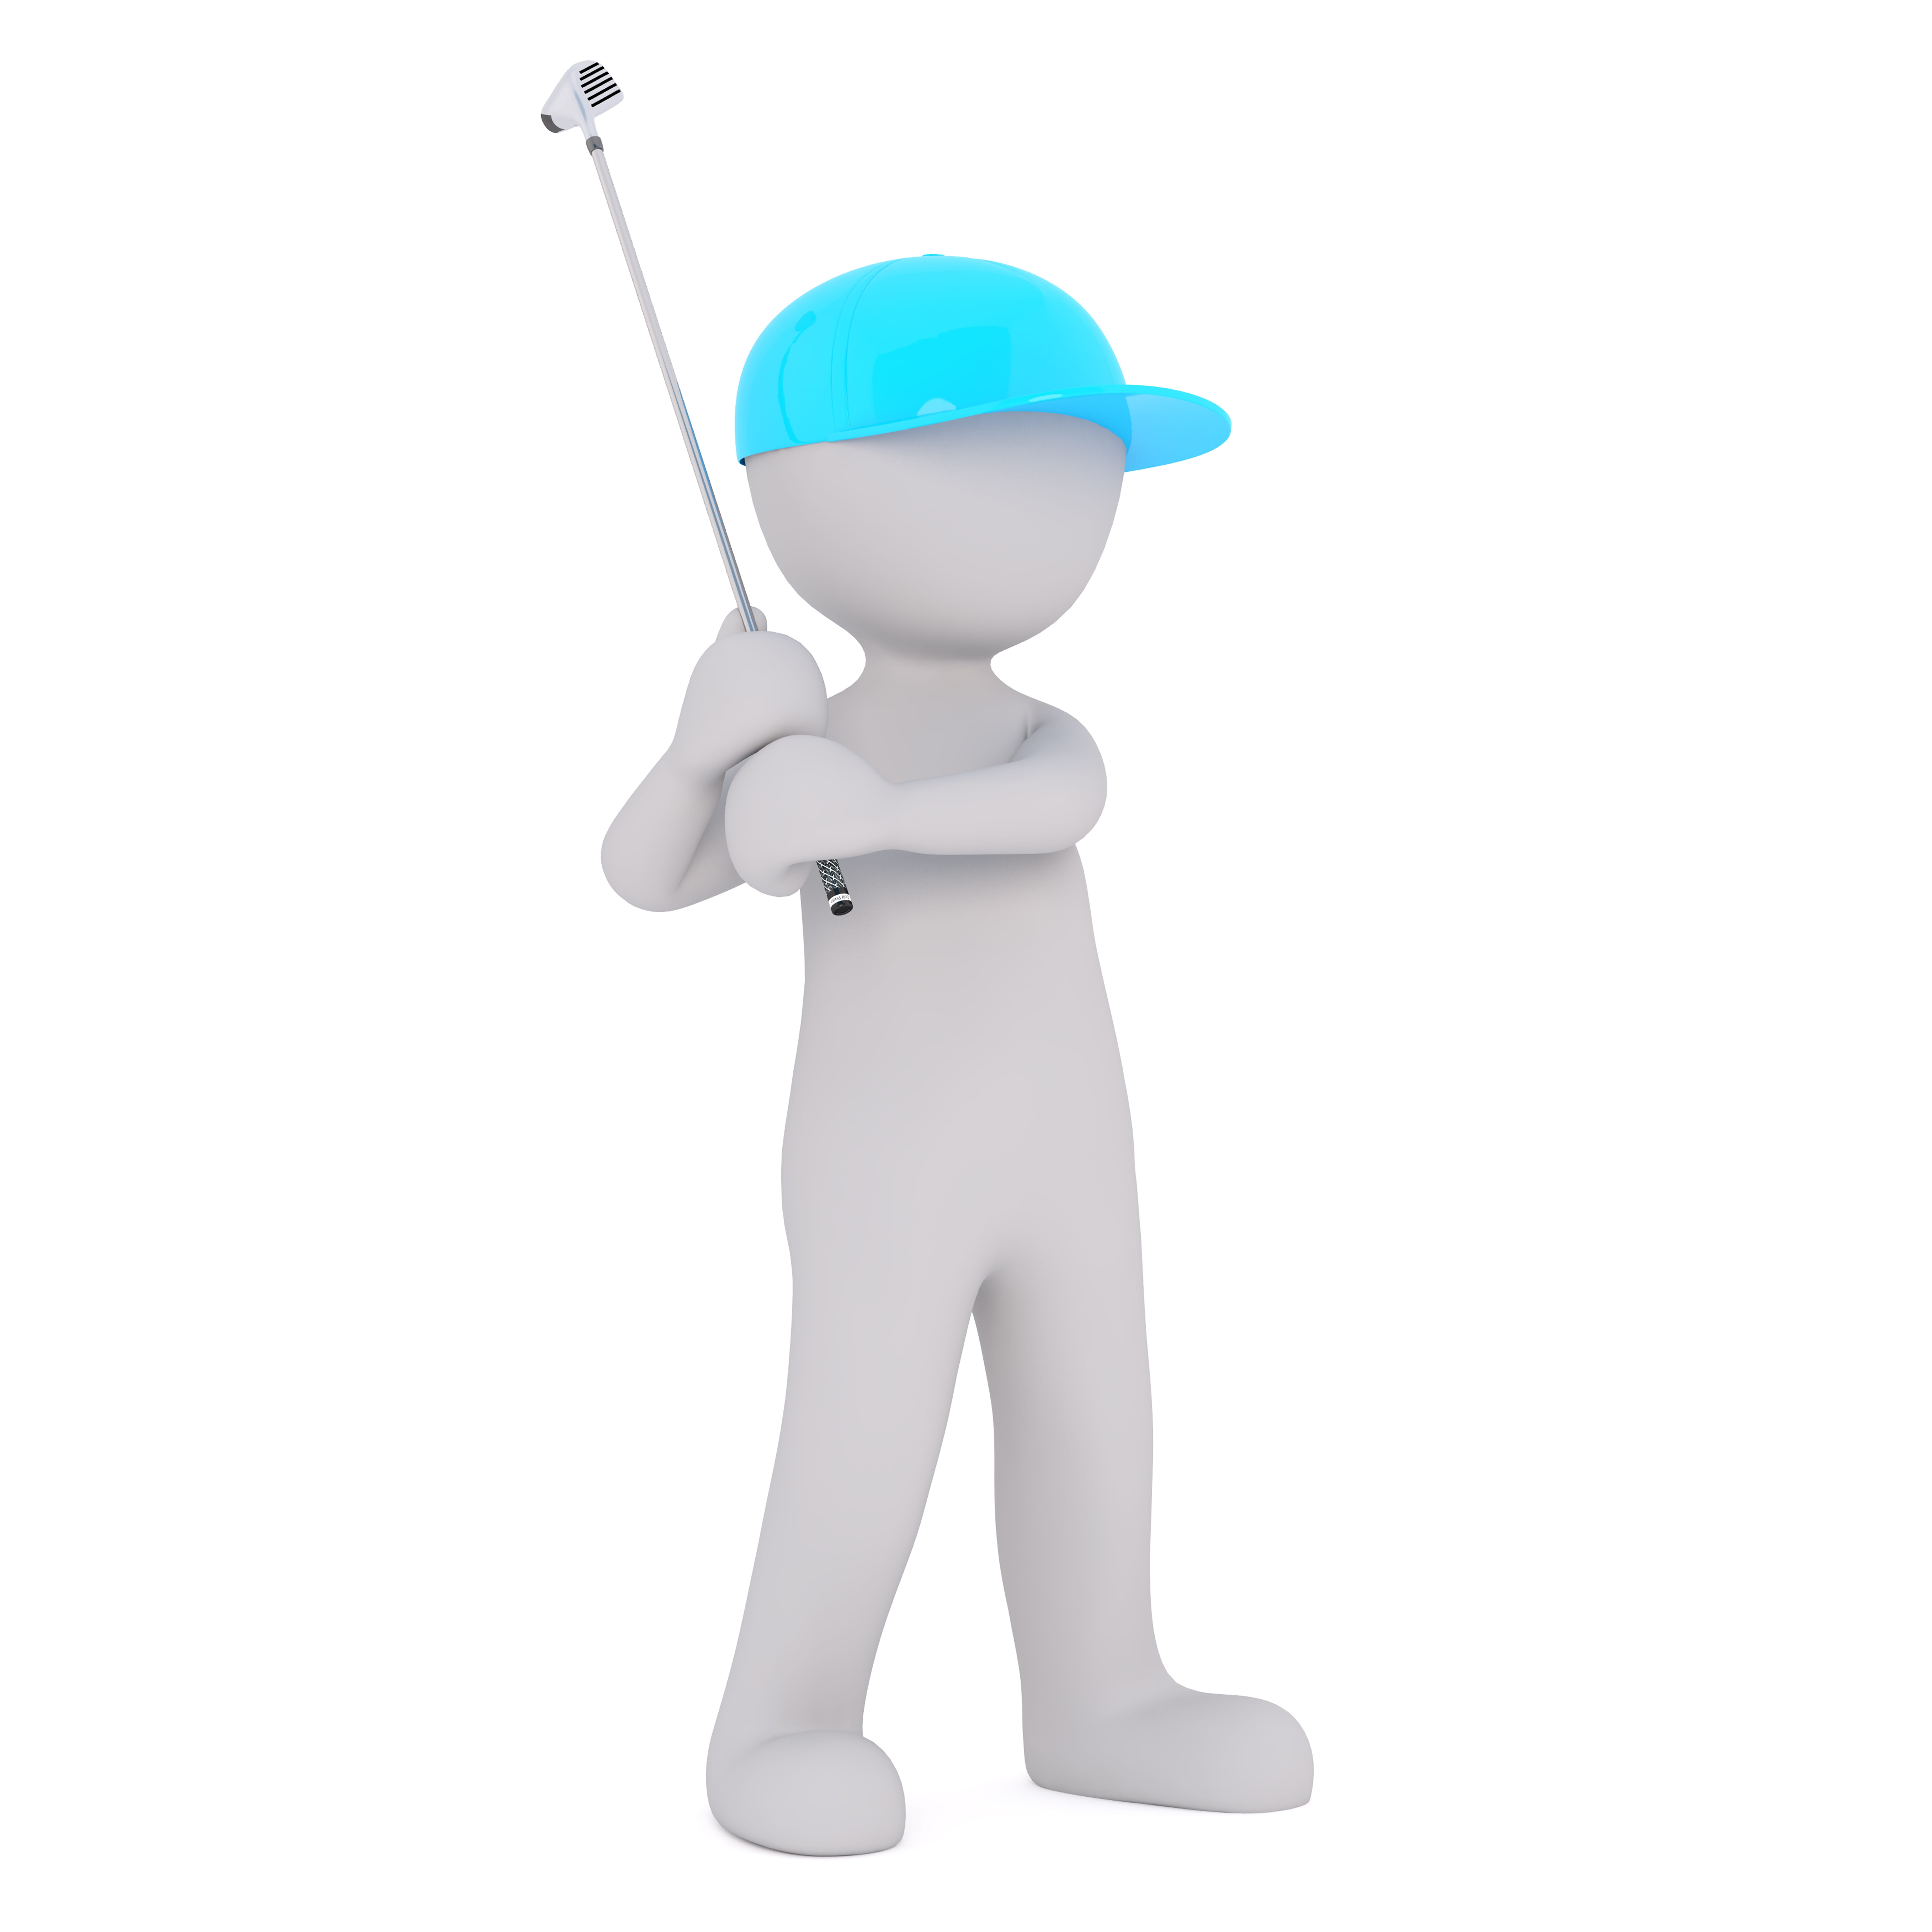 White, Male, 3D Model, Isolated, white male, full body, golf